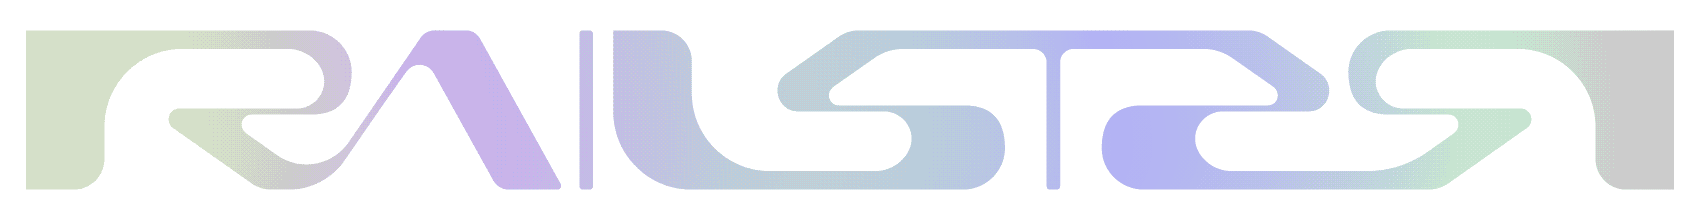 Railster Logo